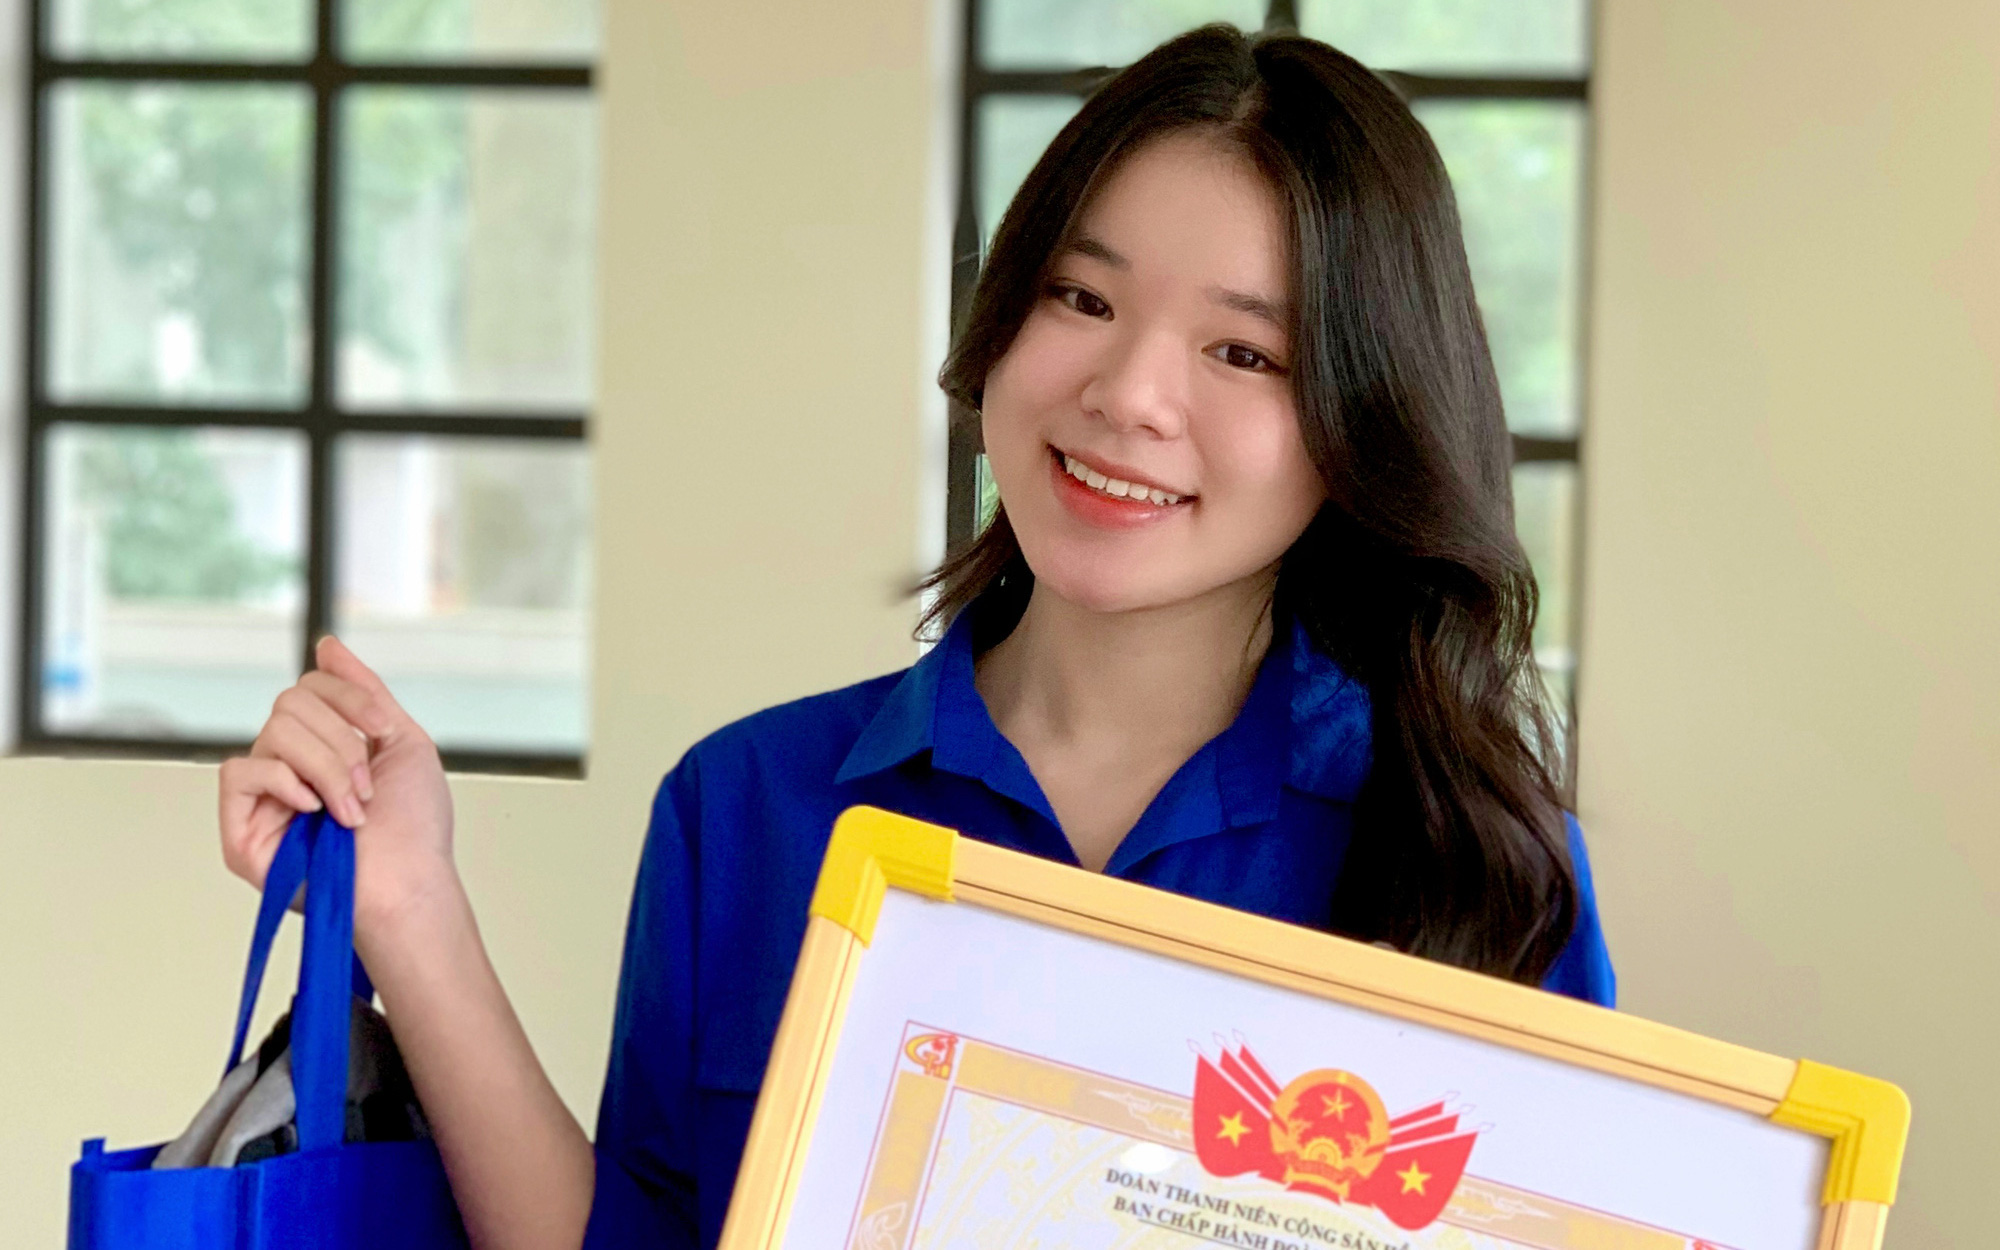 Bí quyết đạt Học sinh 3 tốt cấp Trung ương của nữ sinh THPT Chuyên Lê Quý Đôn (Quảng Trị)